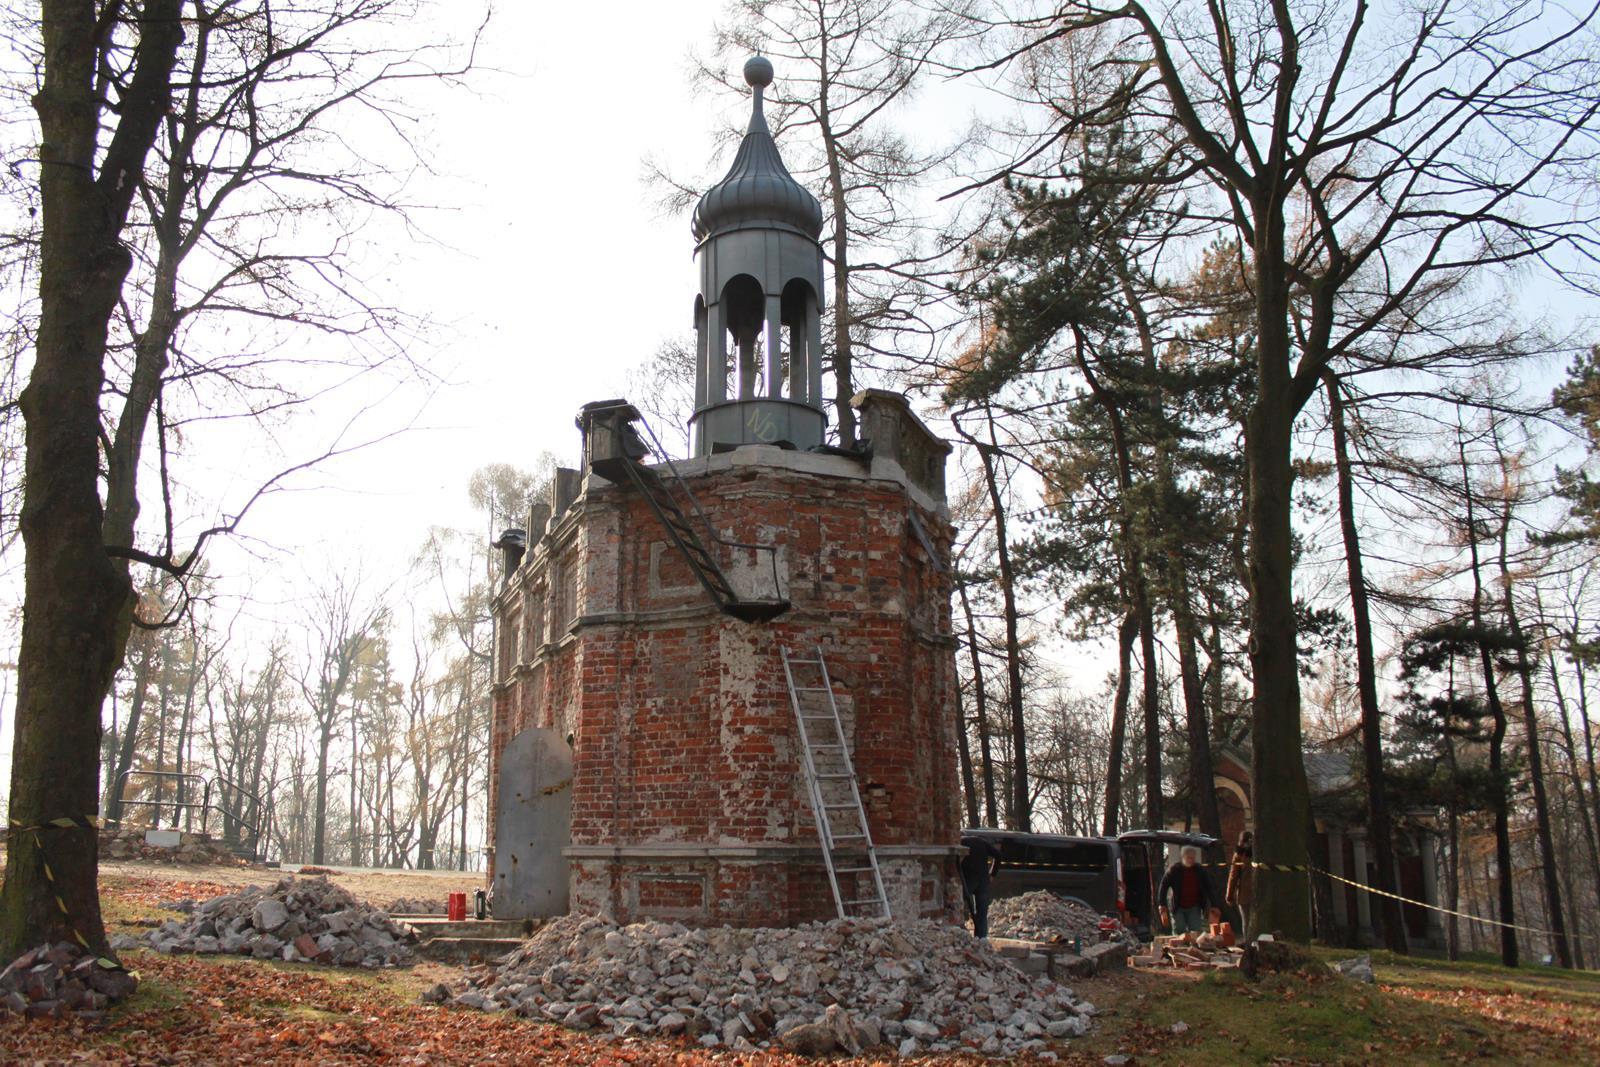 Kaplica XIV Stacji Drogi Krzyżowej na Kalwarii Piekarskiej przechodzi renowację